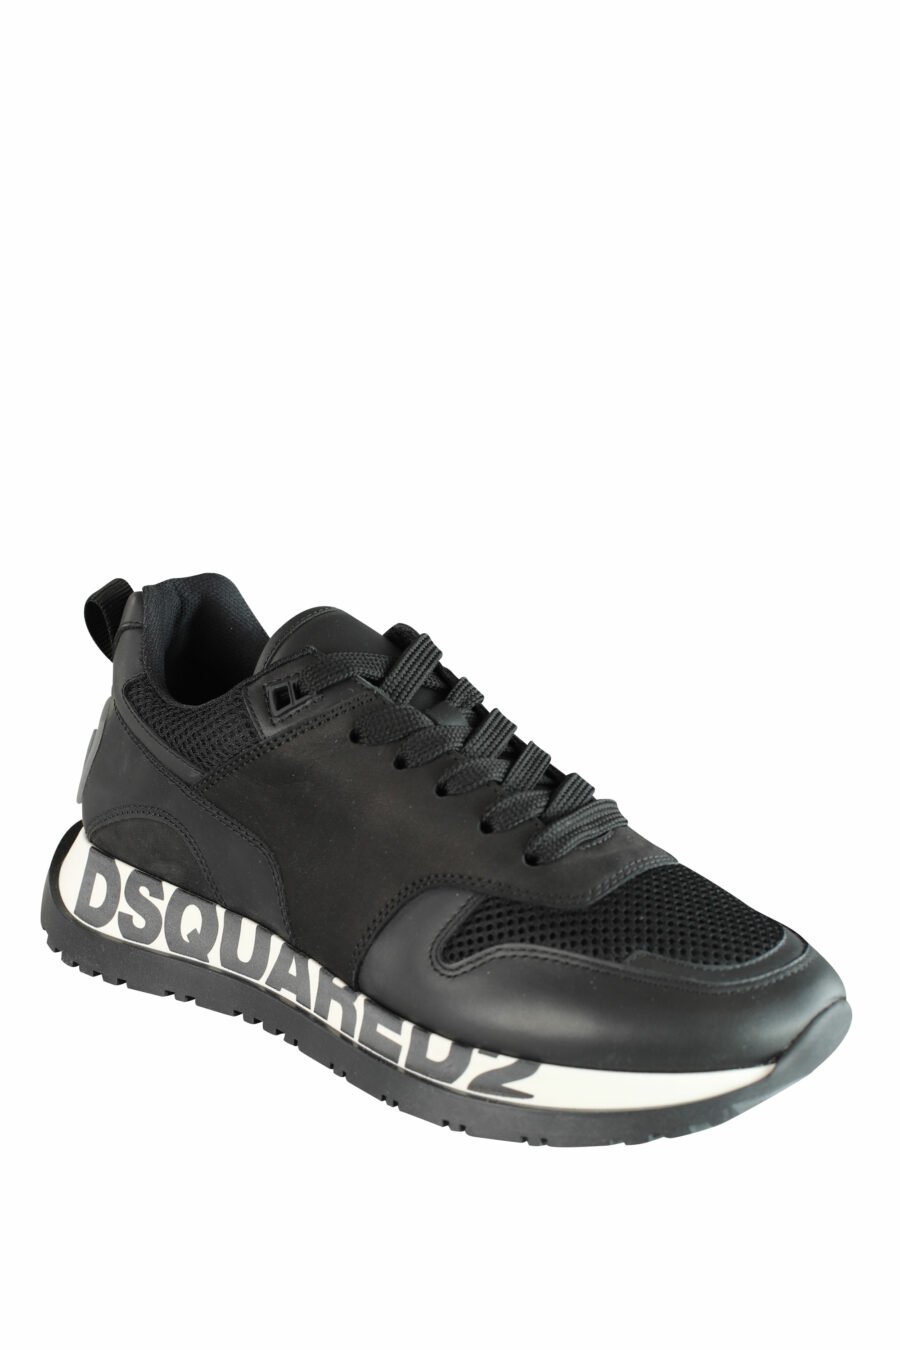 Schwarze Laufschuhe mit weißer Sohle und schwarzem Logo - IMG 1431